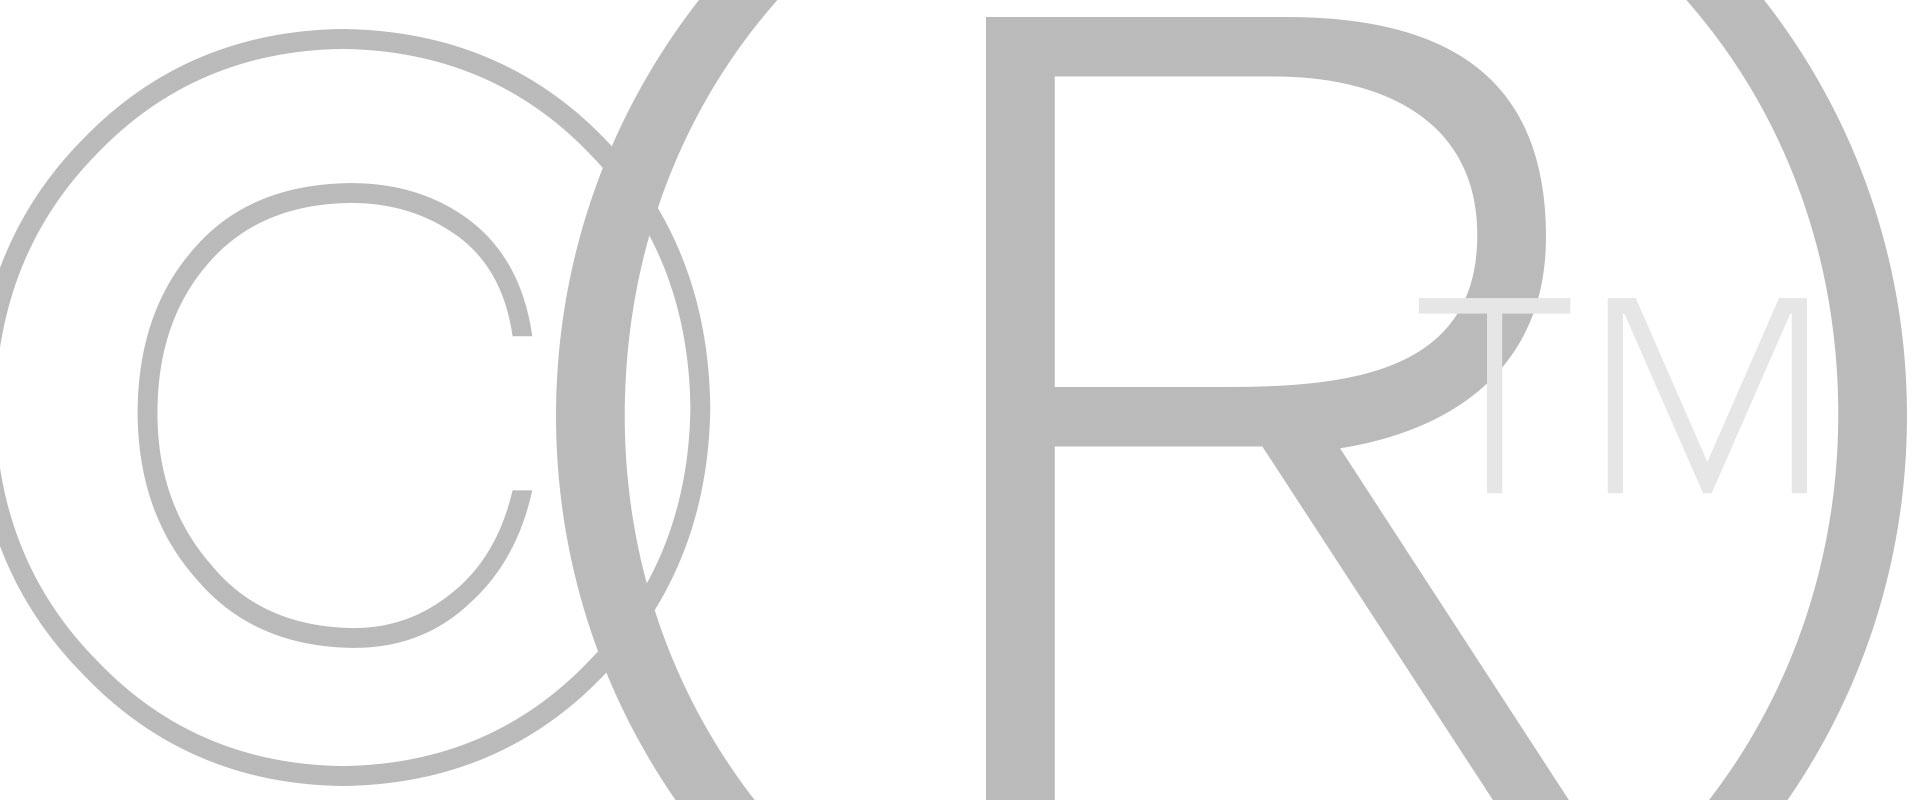 Mengenal Perbedaan Simbol C R Tm Di Merek Dagang Kayak Logo Images - Riset